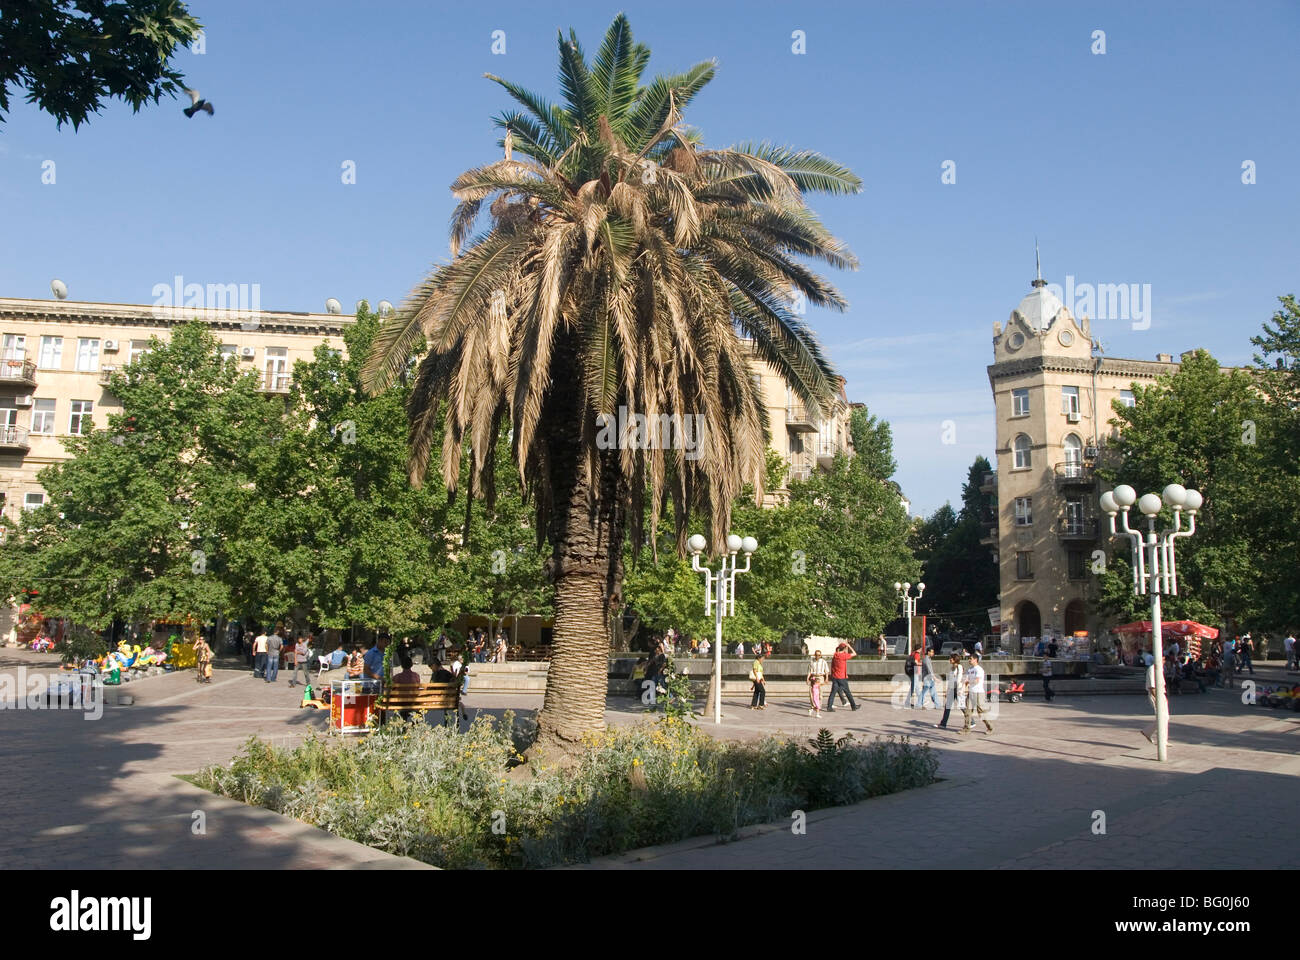 La Place des Fontaines, la principale zone ouverte au milieu de la ville, Bakou, Azerbaïdjan, Asie centrale, Asie Banque D'Images